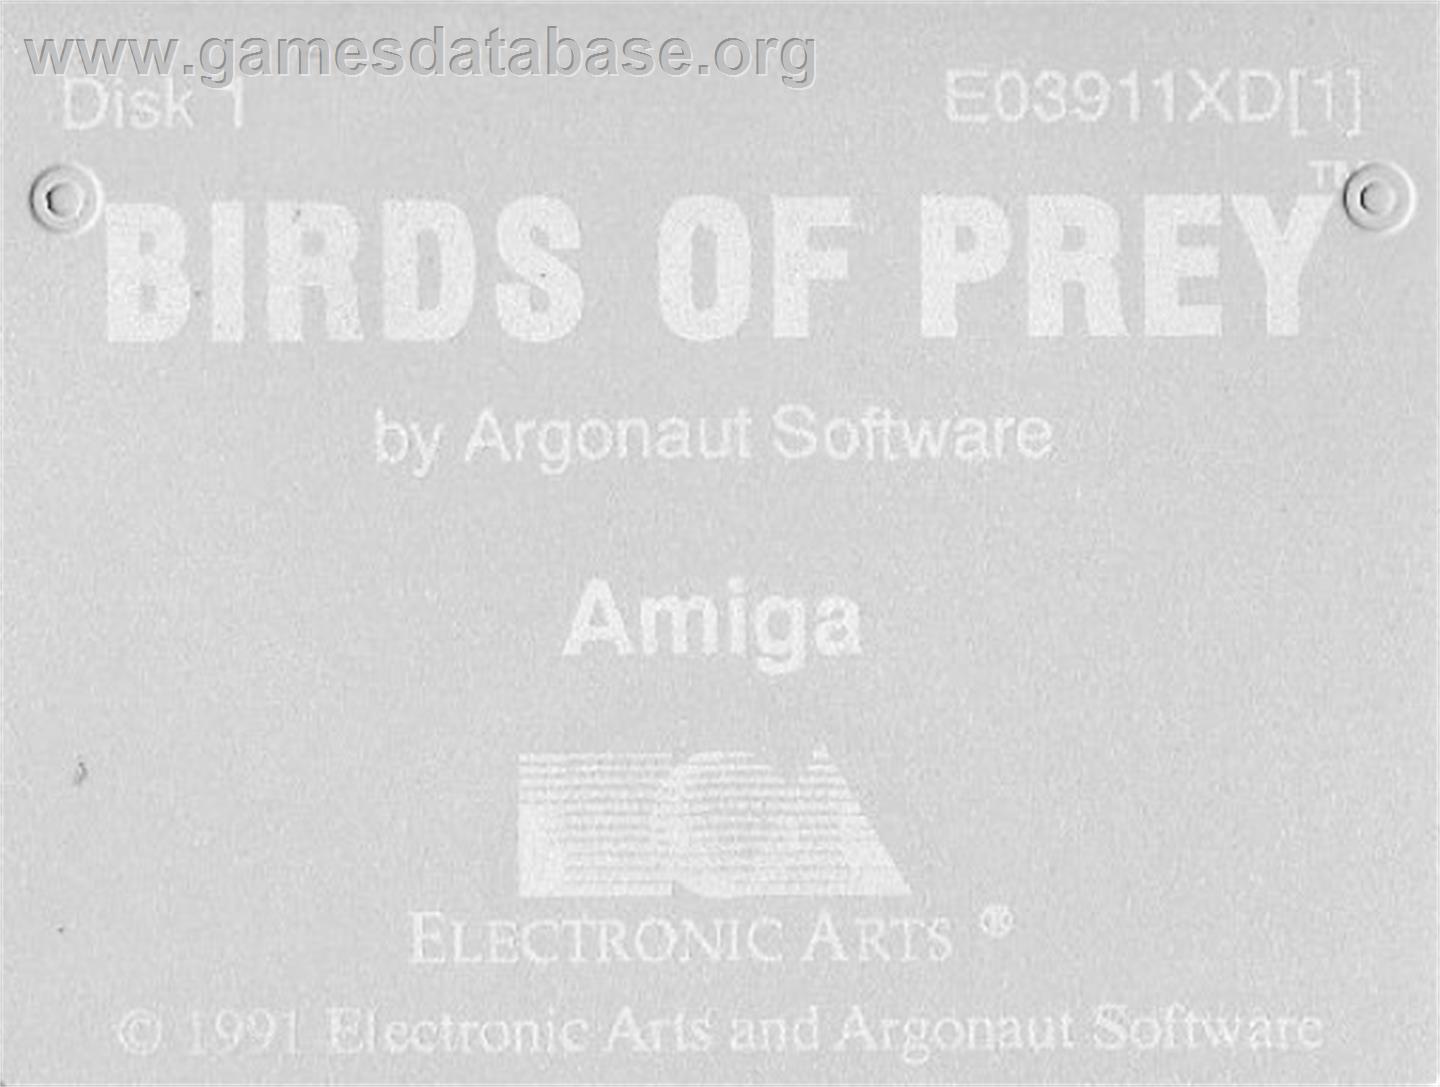 Birds of Prey - Commodore Amiga - Artwork - Cartridge Top